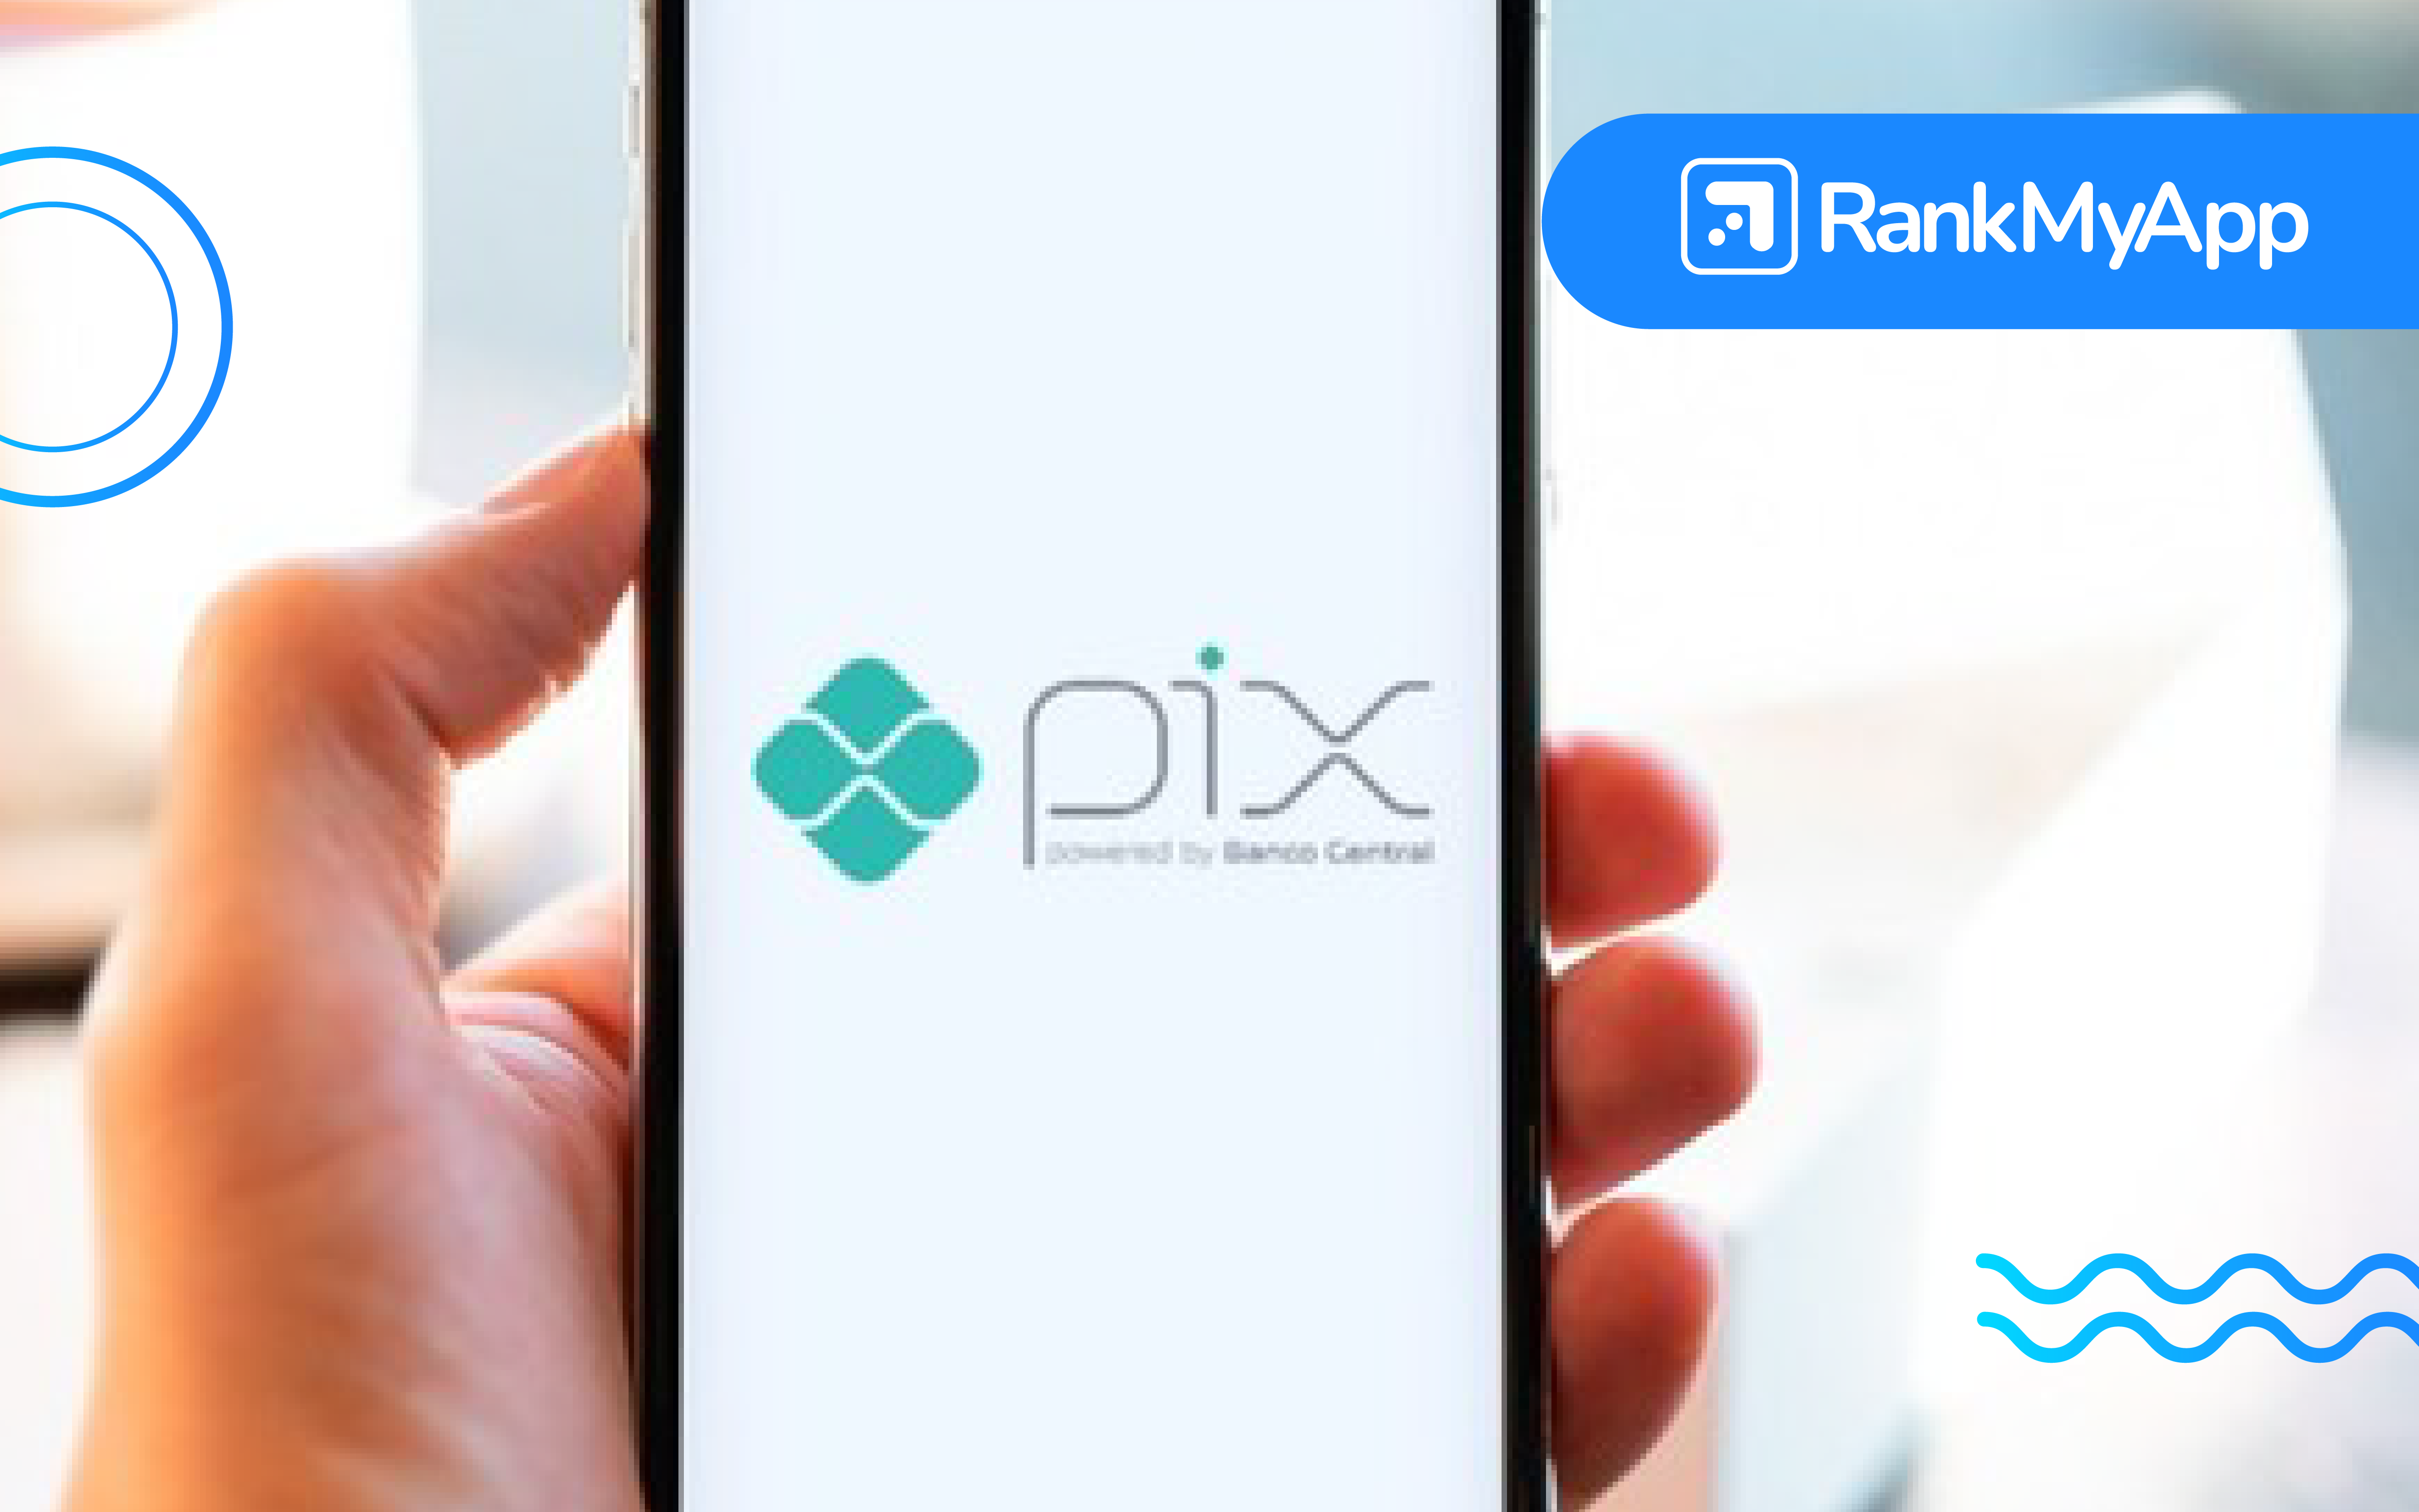 Pix integração com apps: conheça essa novidade e como ela vai melhorar as transações financeiras